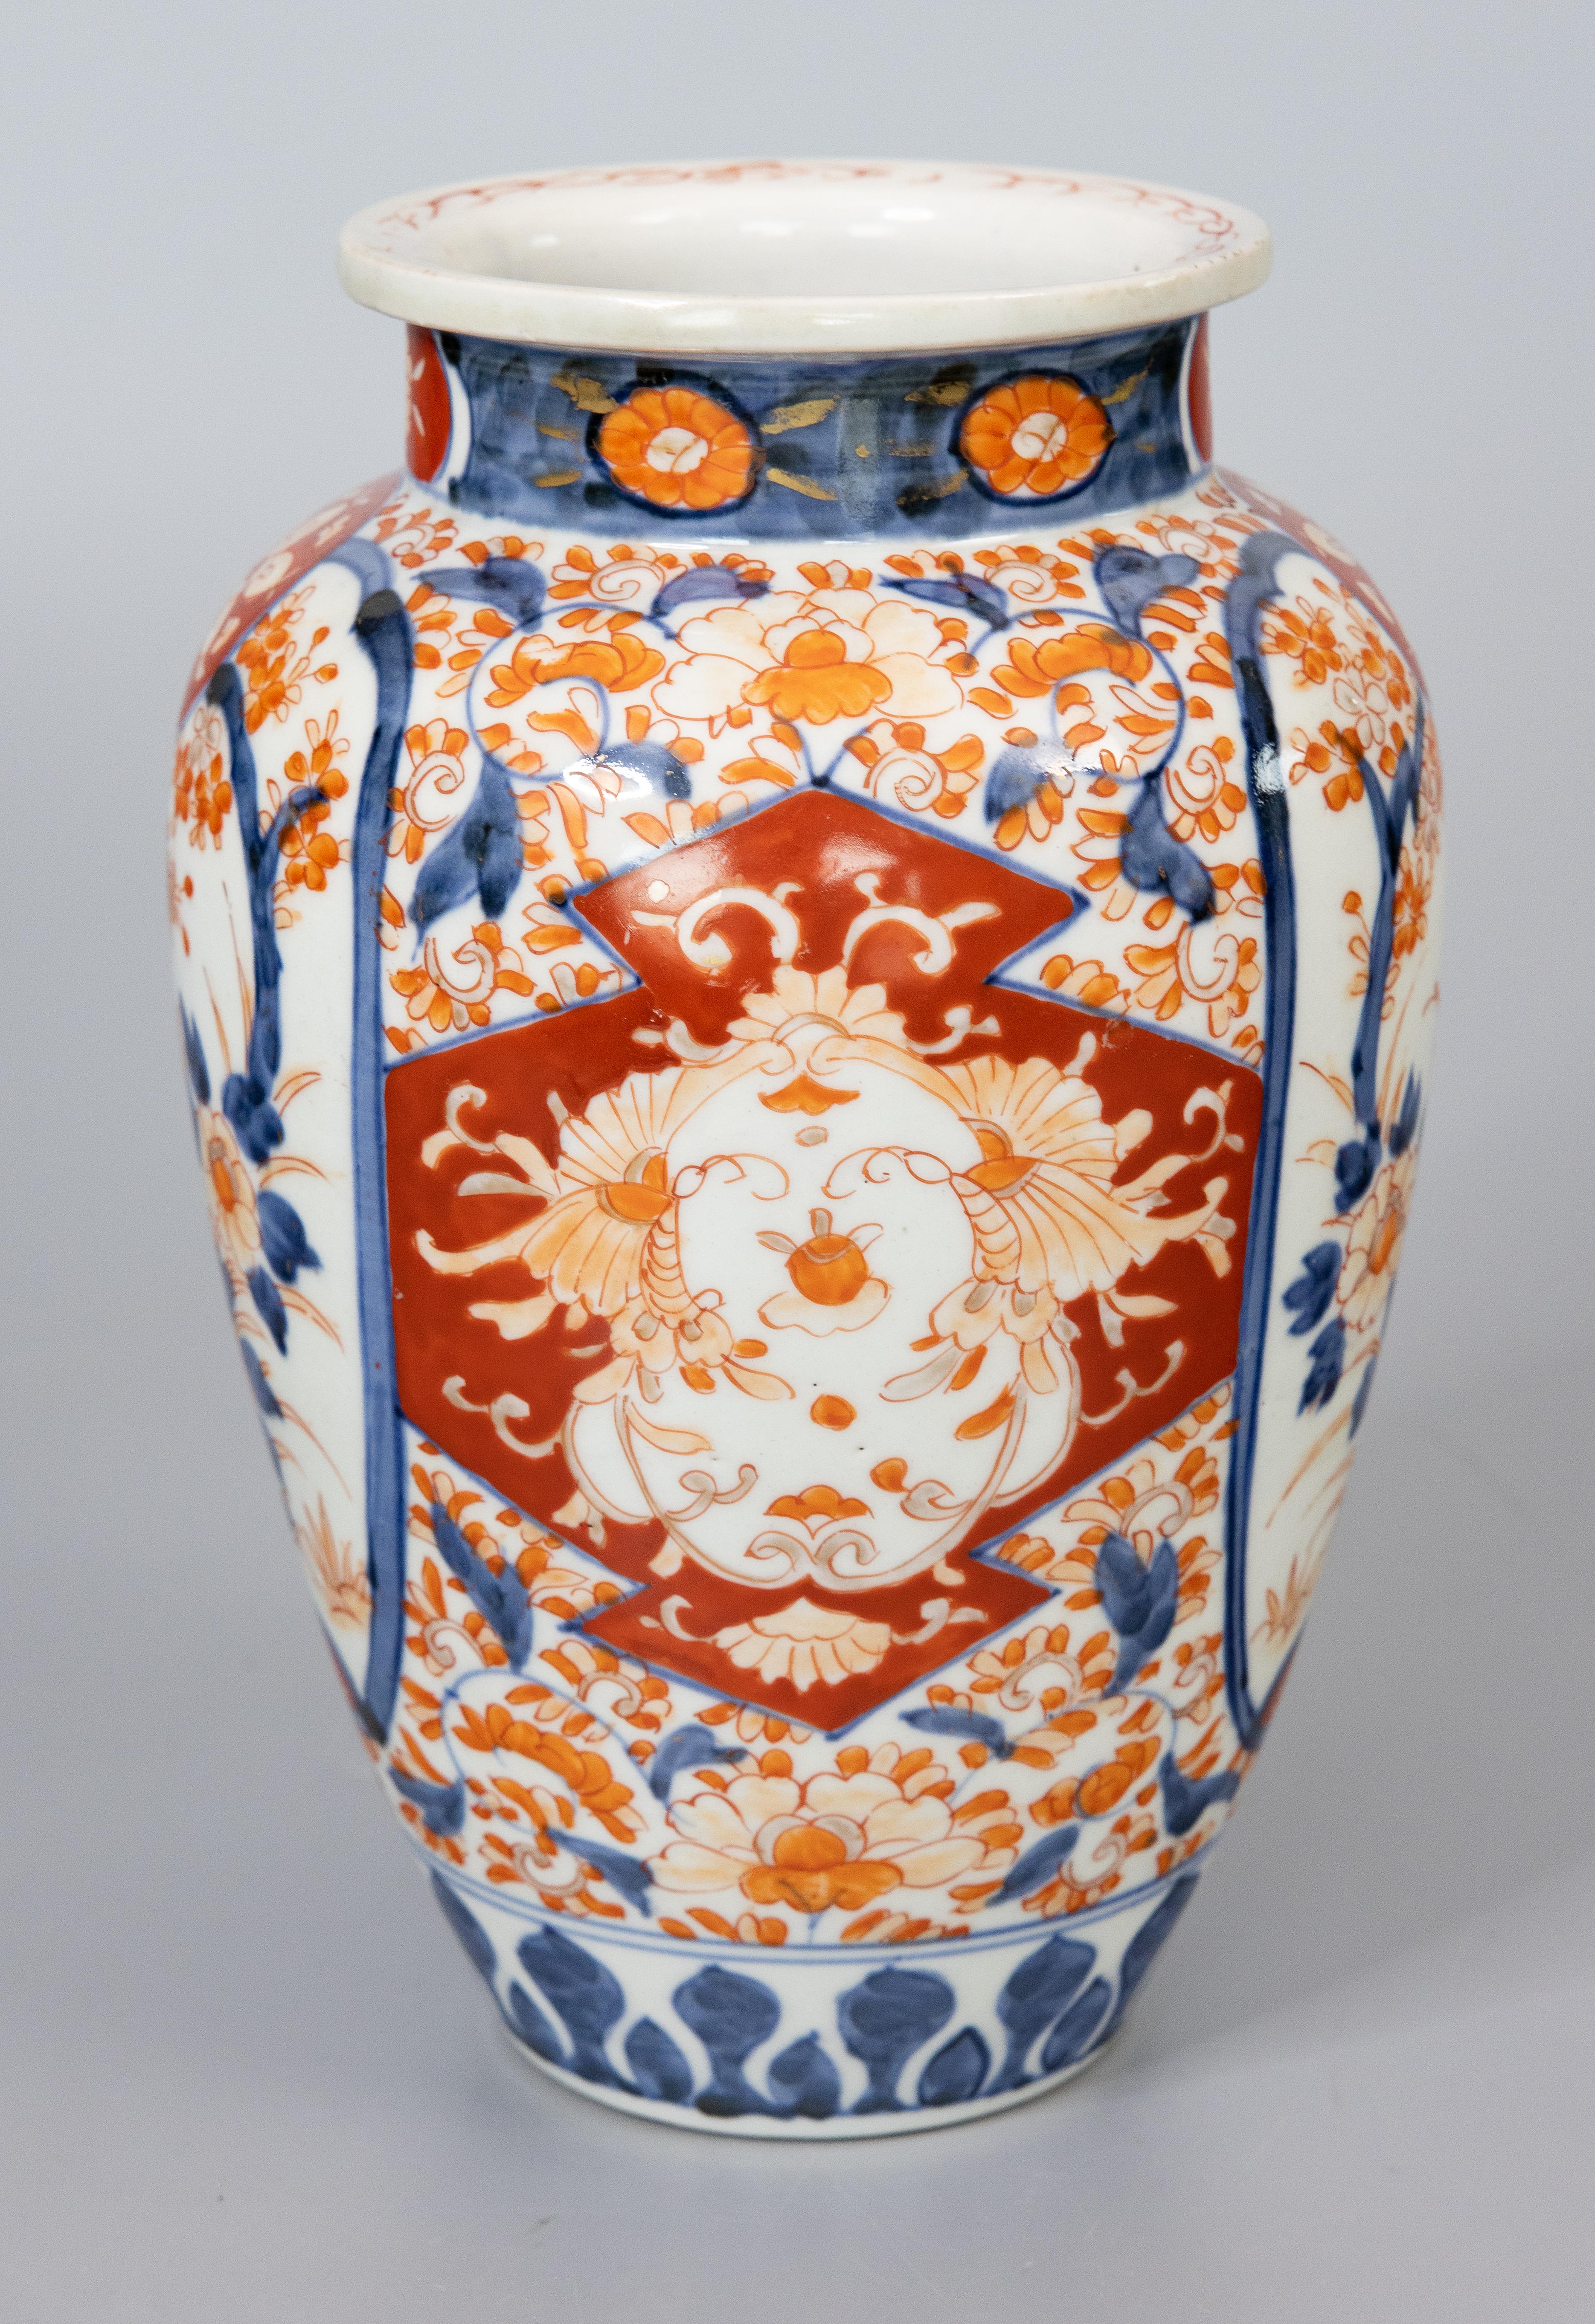 Eine wunderschöne antike Vase aus japanischem Imari-Porzellan aus dem 19. Jahrhundert. Diese feine Vase ist schön groß und hat eine schöne Form und ein handgemaltes Blumenmuster in den traditionellen Imari-Farben. Es ist in schönem antiken Zustand